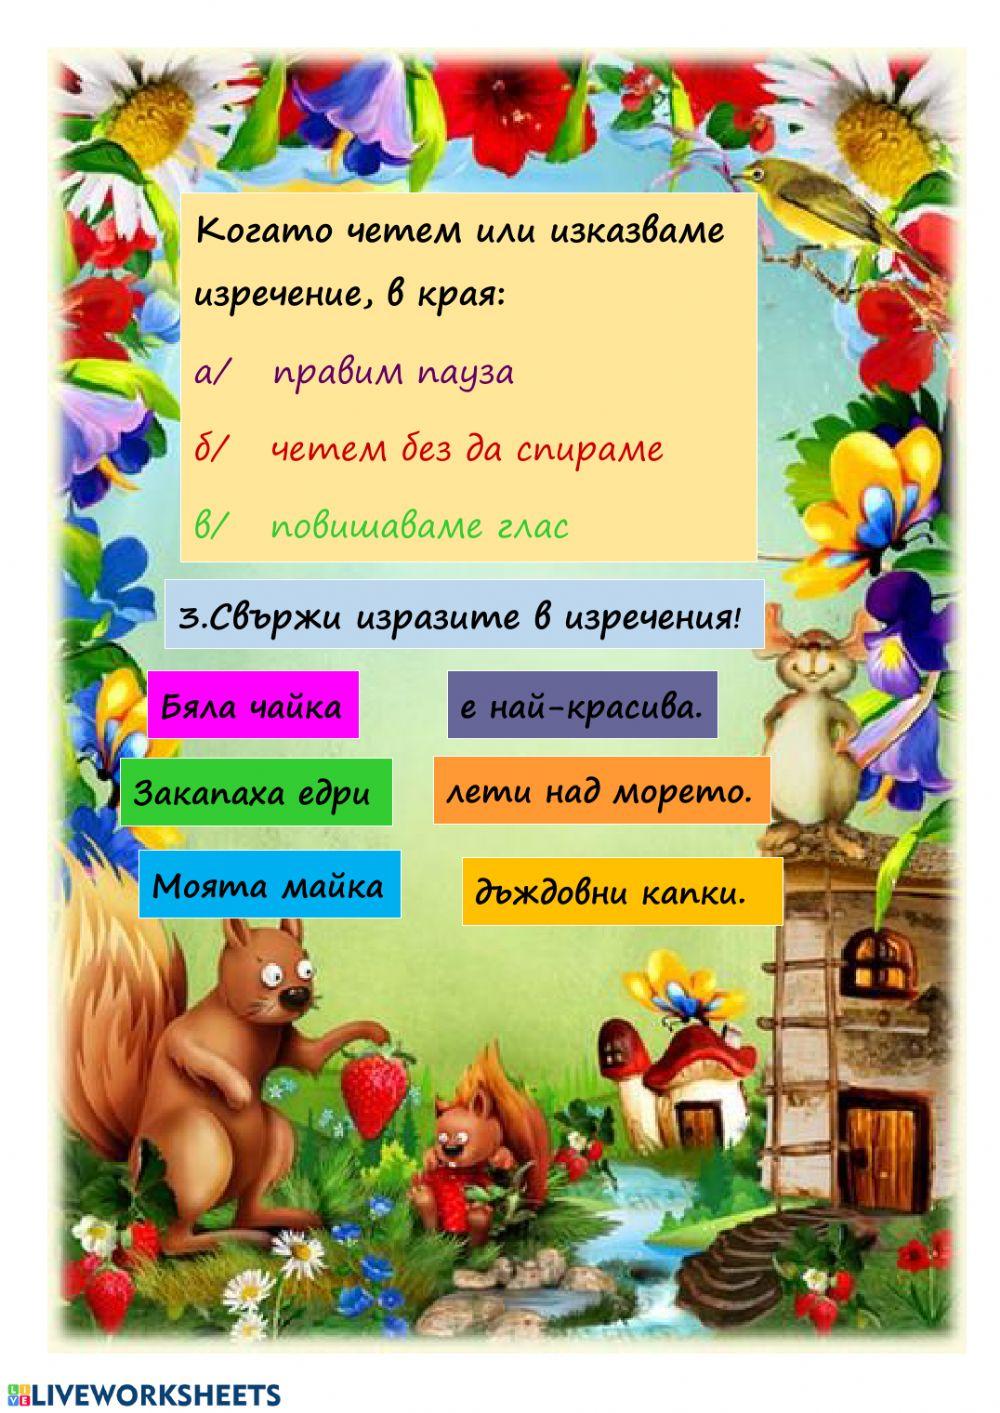 Изречения в българския език